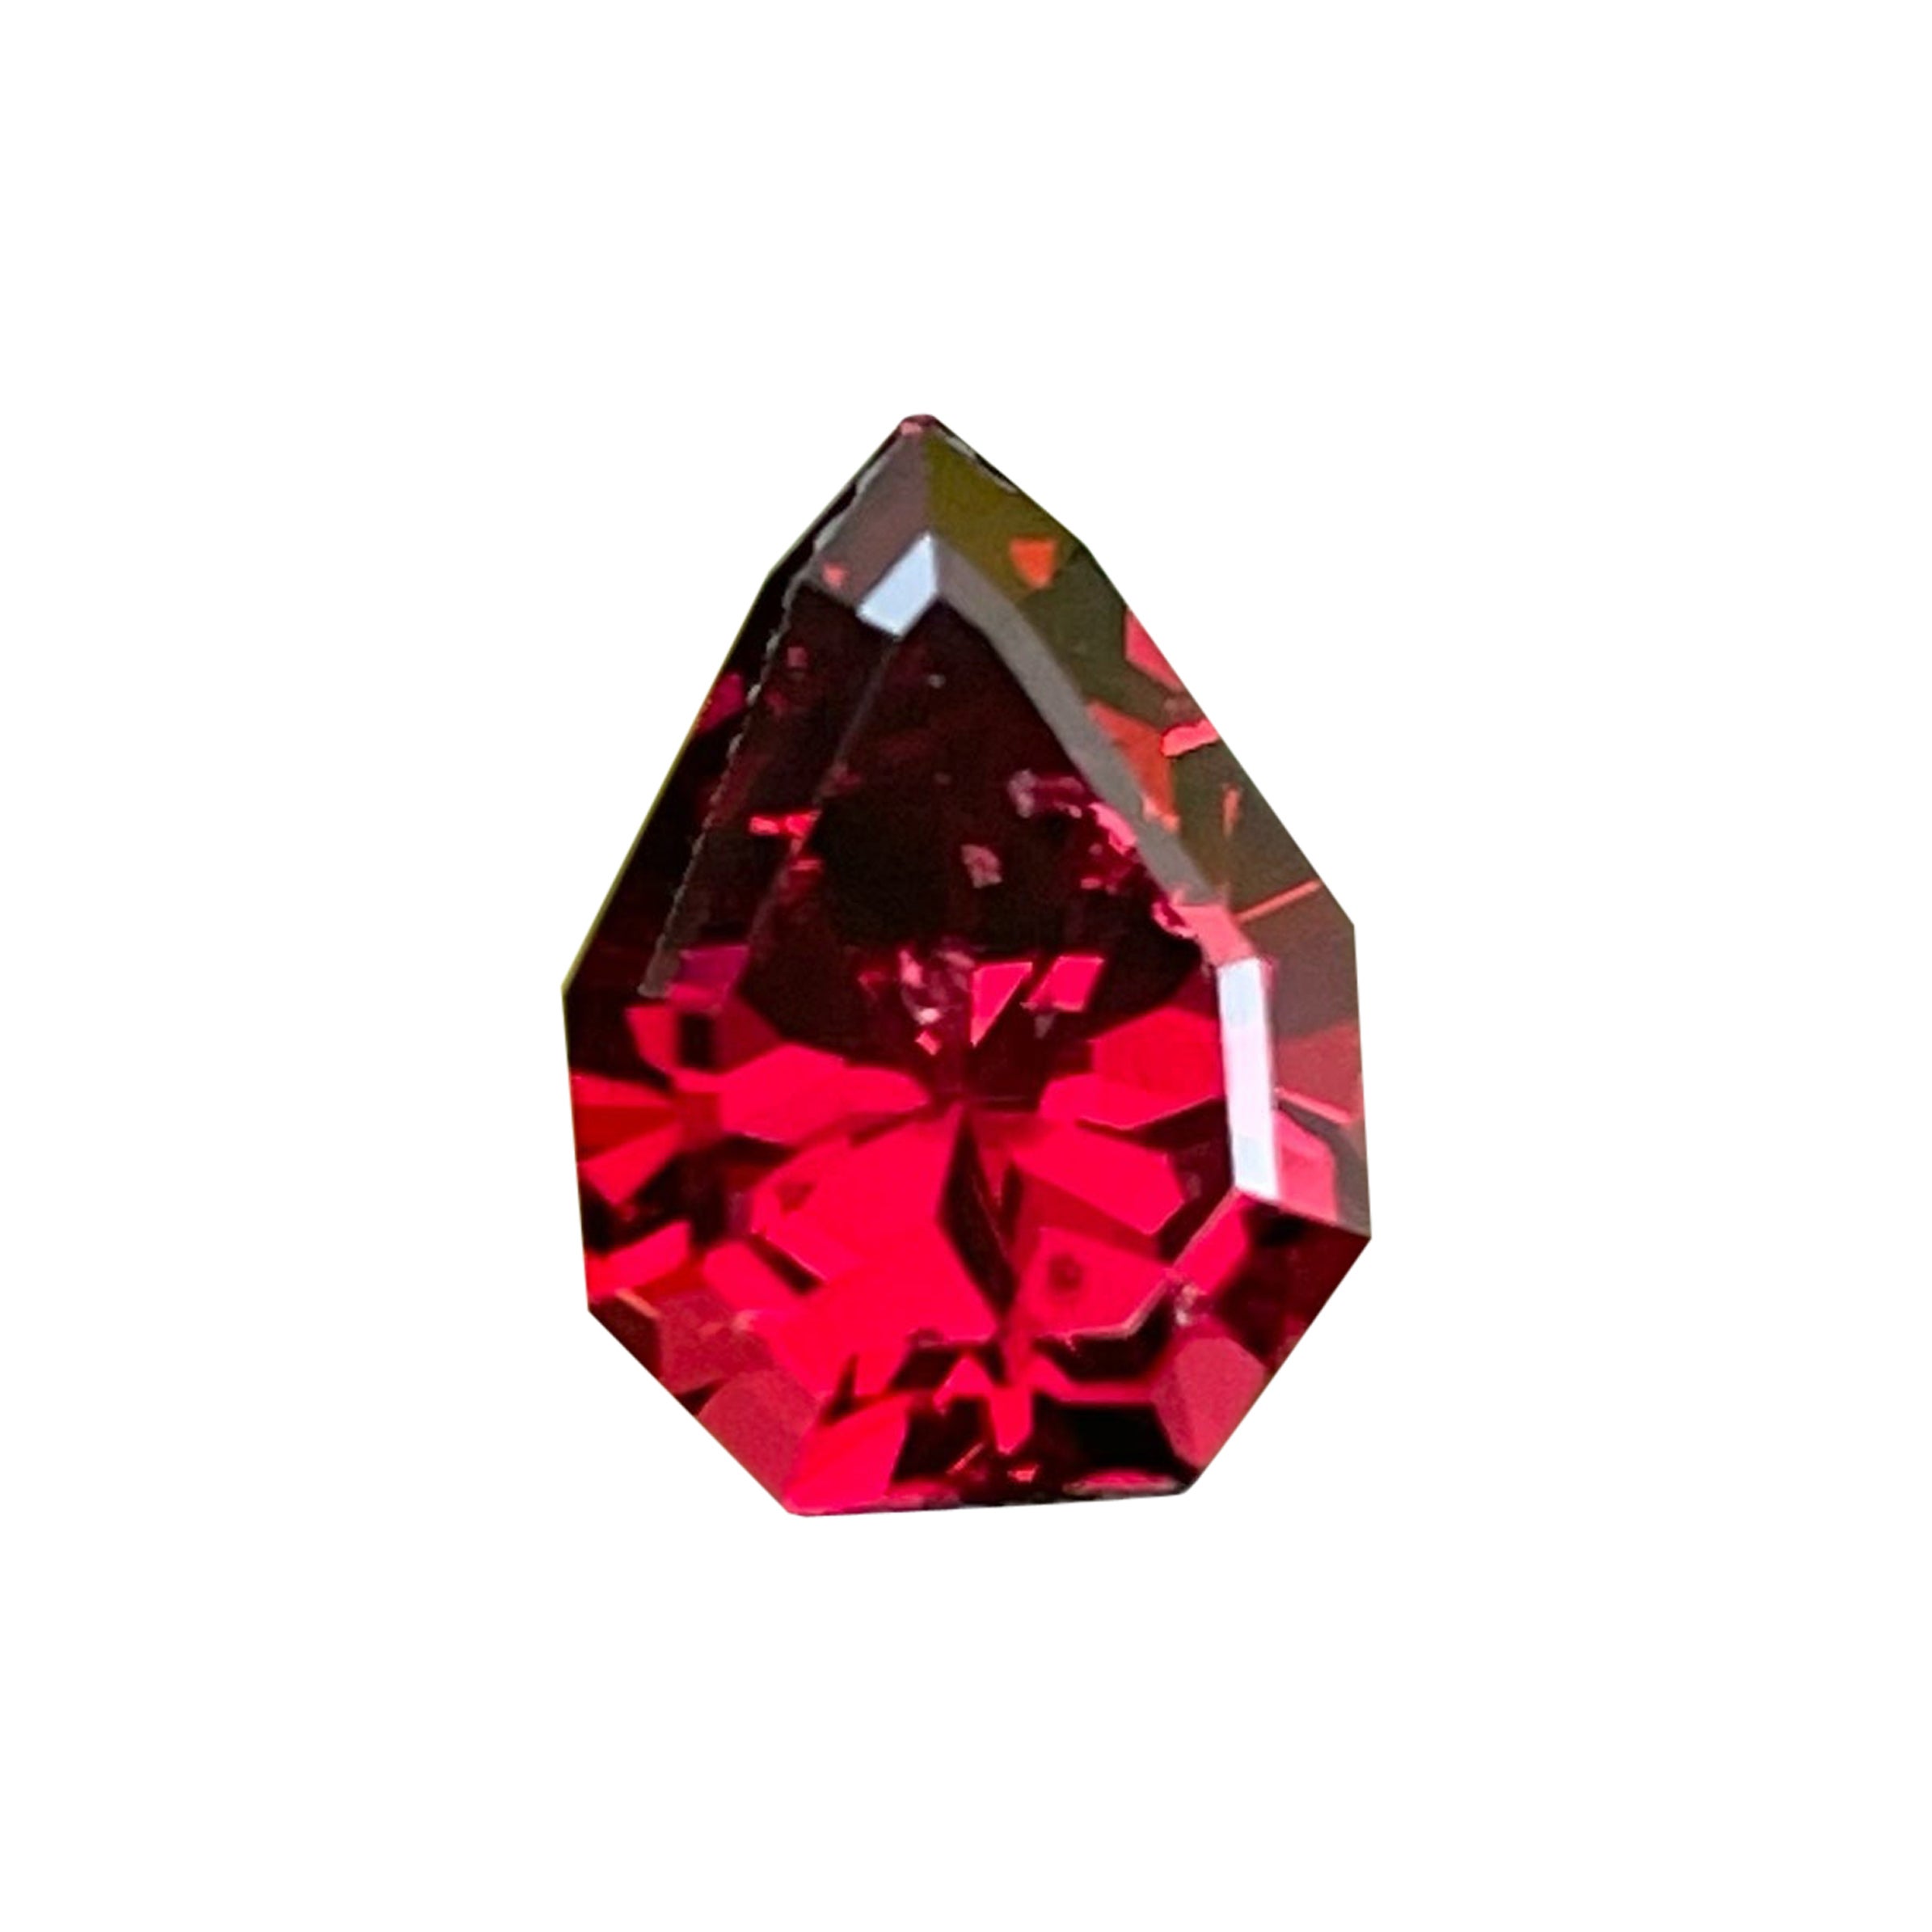 Garnet rouge vif pierre précieuse non sertie de 2,95 carats grenat poire et grenat facetté